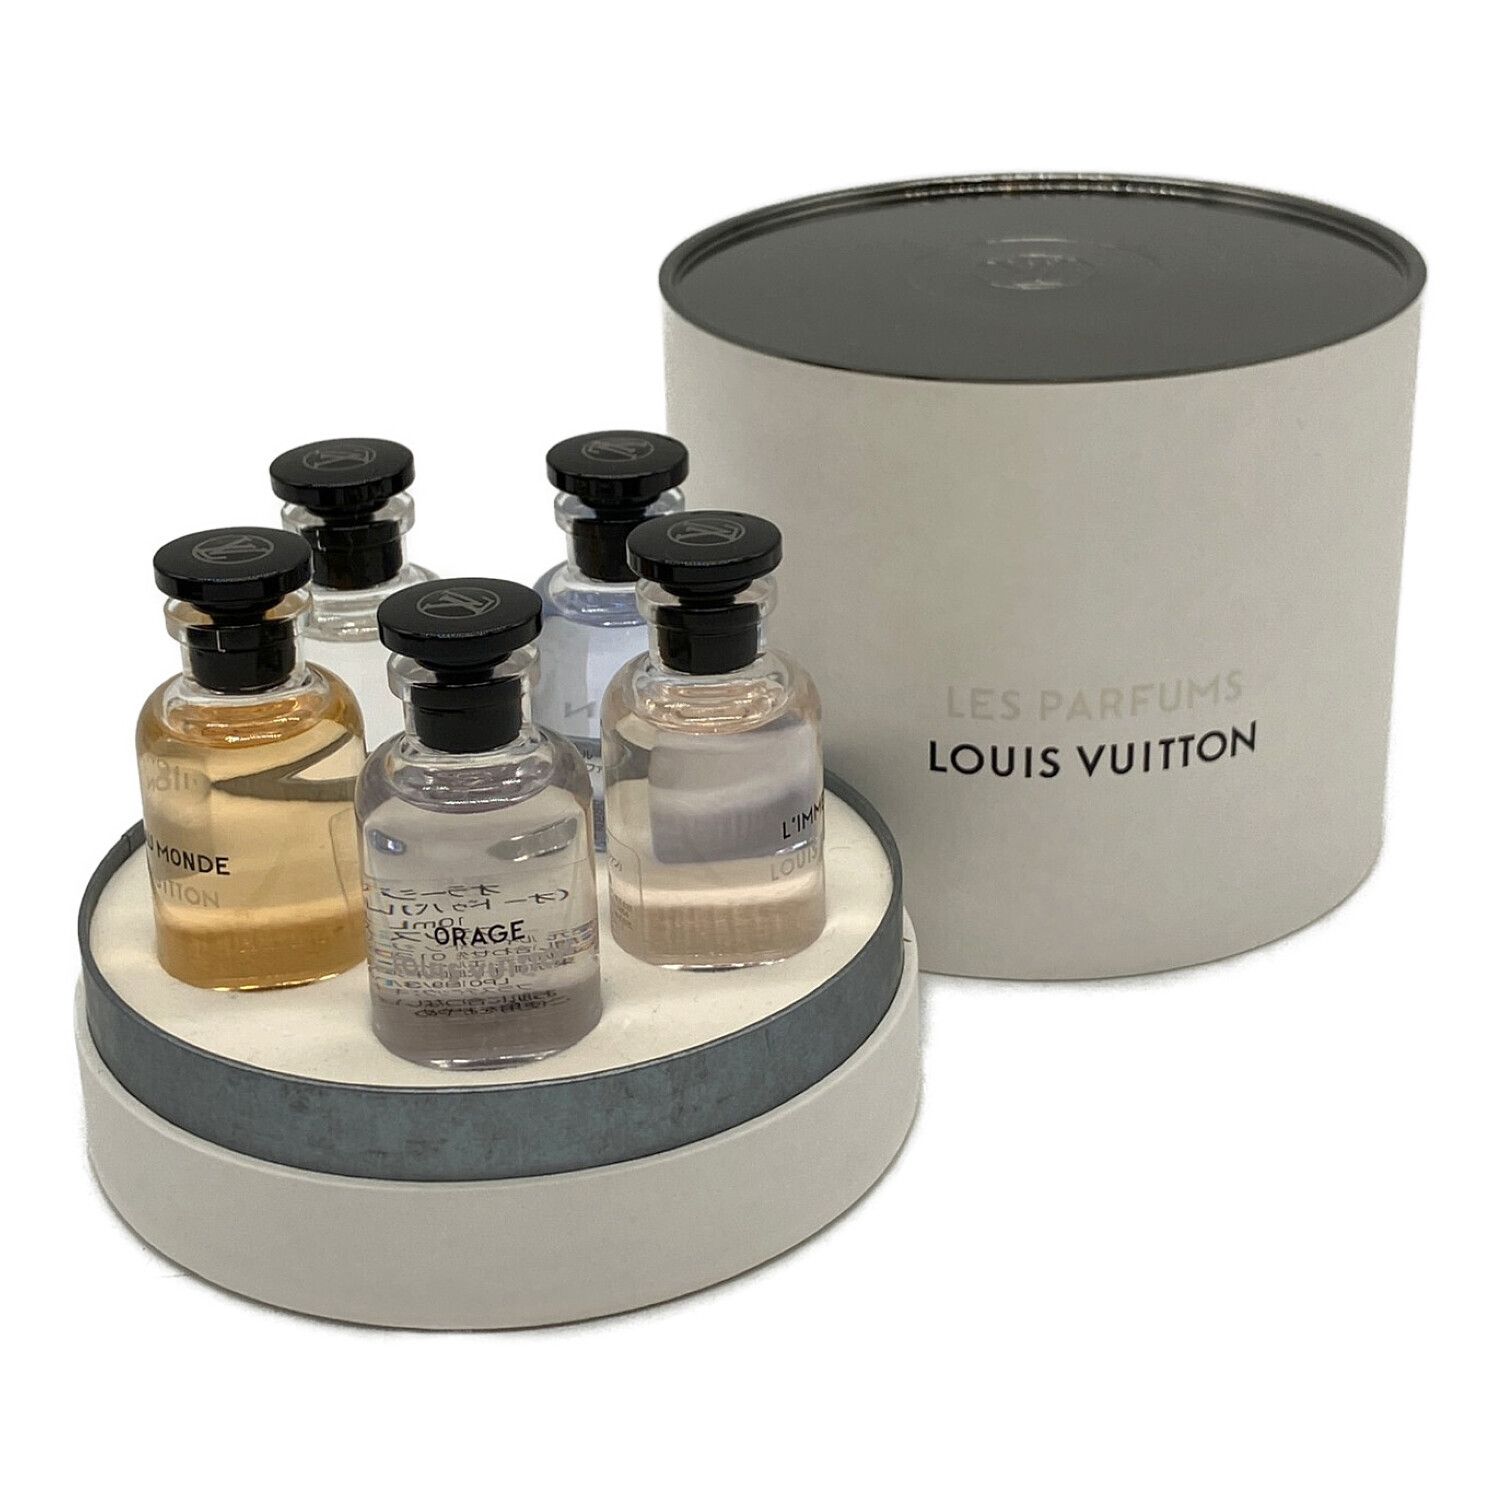 LOUIS VUITTON (ルイ ヴィトン) 香水 ミニチュアセット 5×10ml 残量80